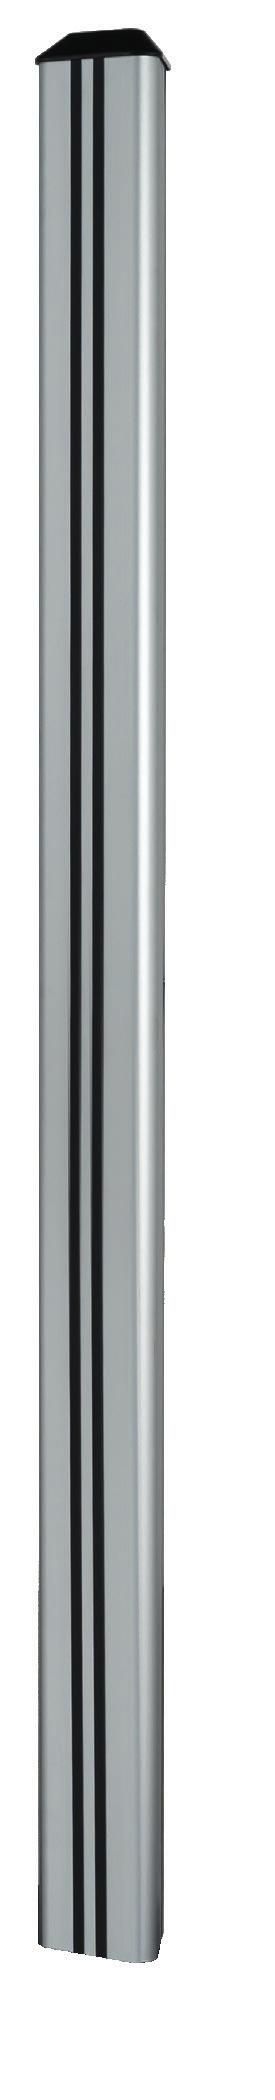 B-Tech Vertical Support Column, 1.8 m, Silver - W126325126